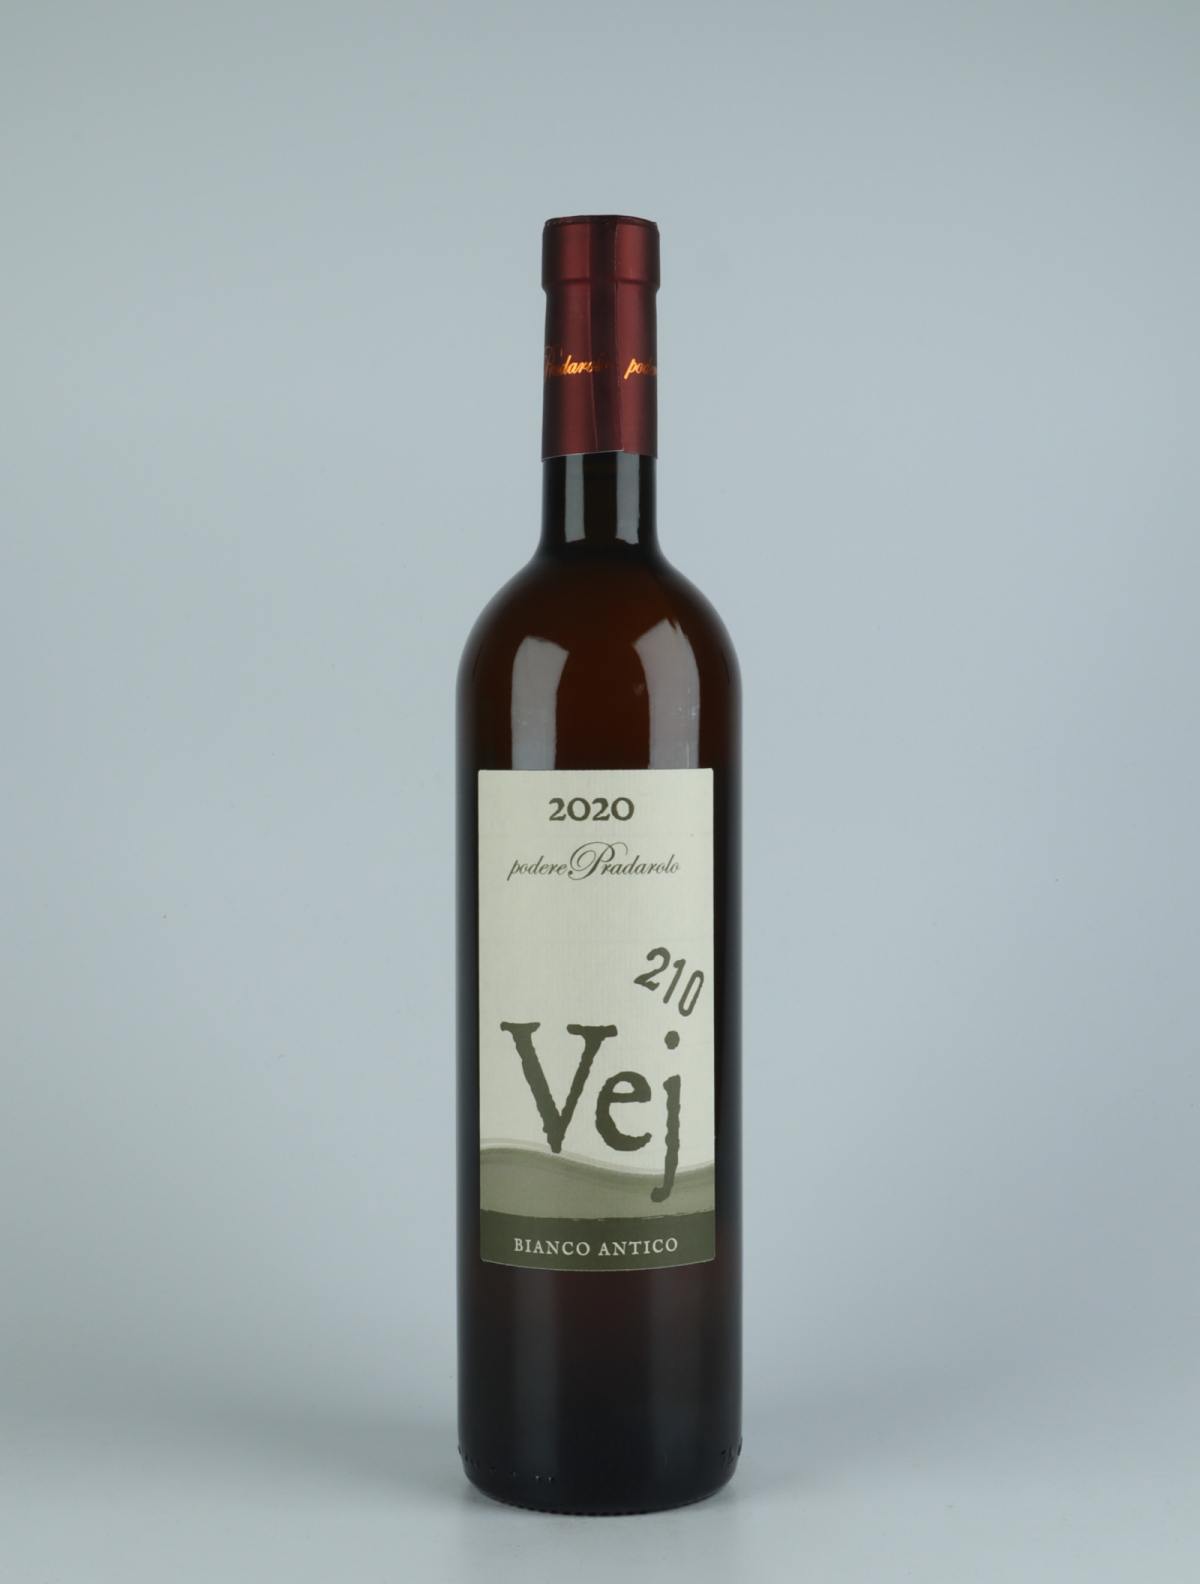 En flaske 2020 Vej 210 - Bianco Antico Orange vin fra Podere Pradarolo, Emilia-Romagna i Italien